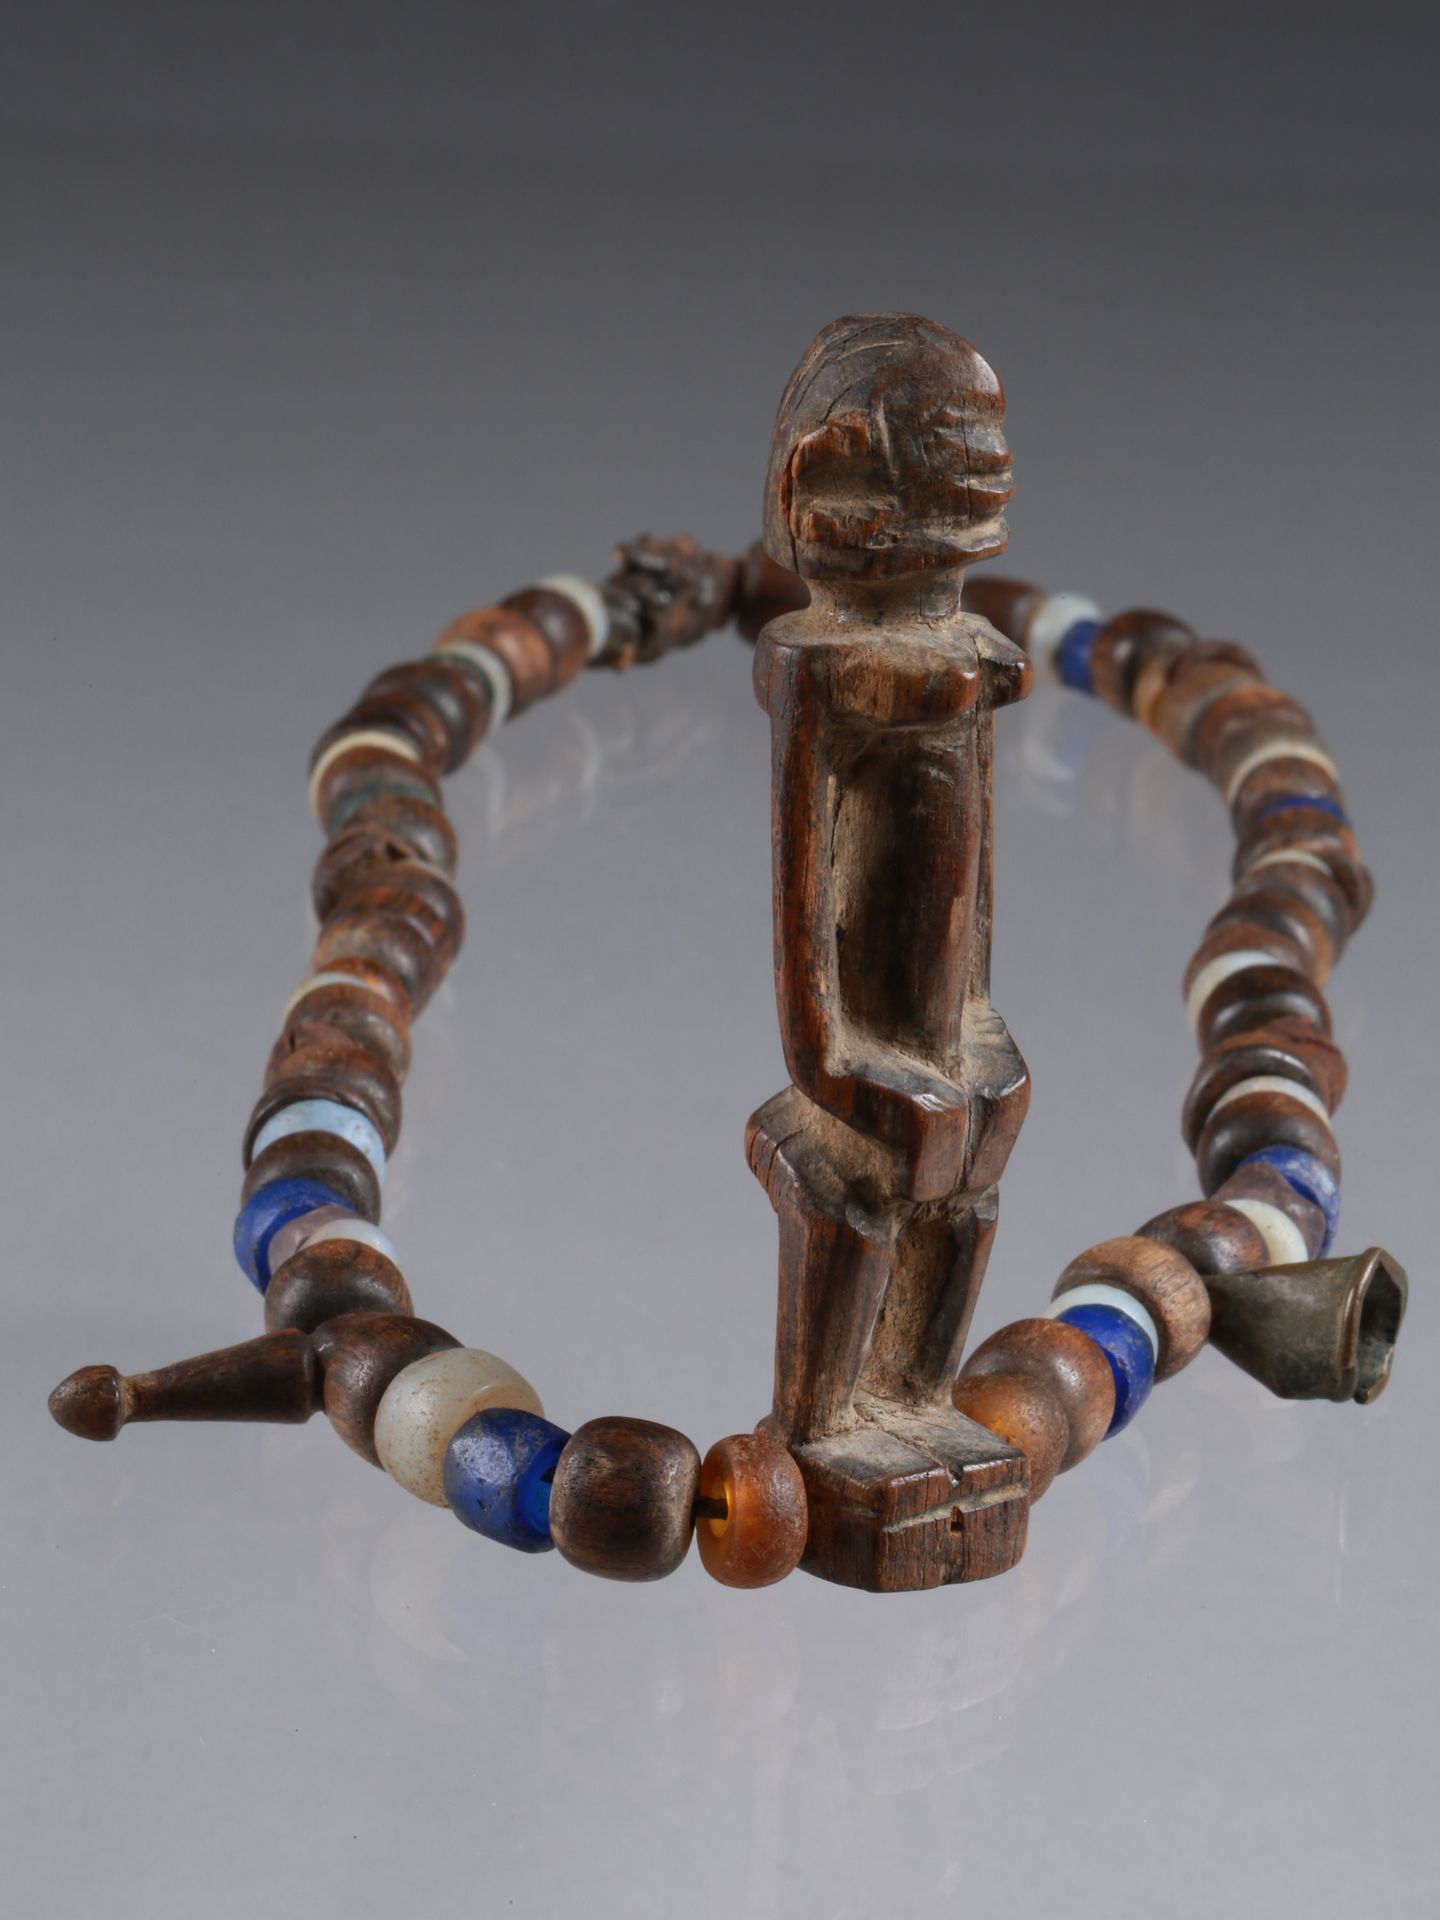 A Dogon Necklace with a figurative Pendant Collana con ciondolo figurato

Dogon,&hellip;